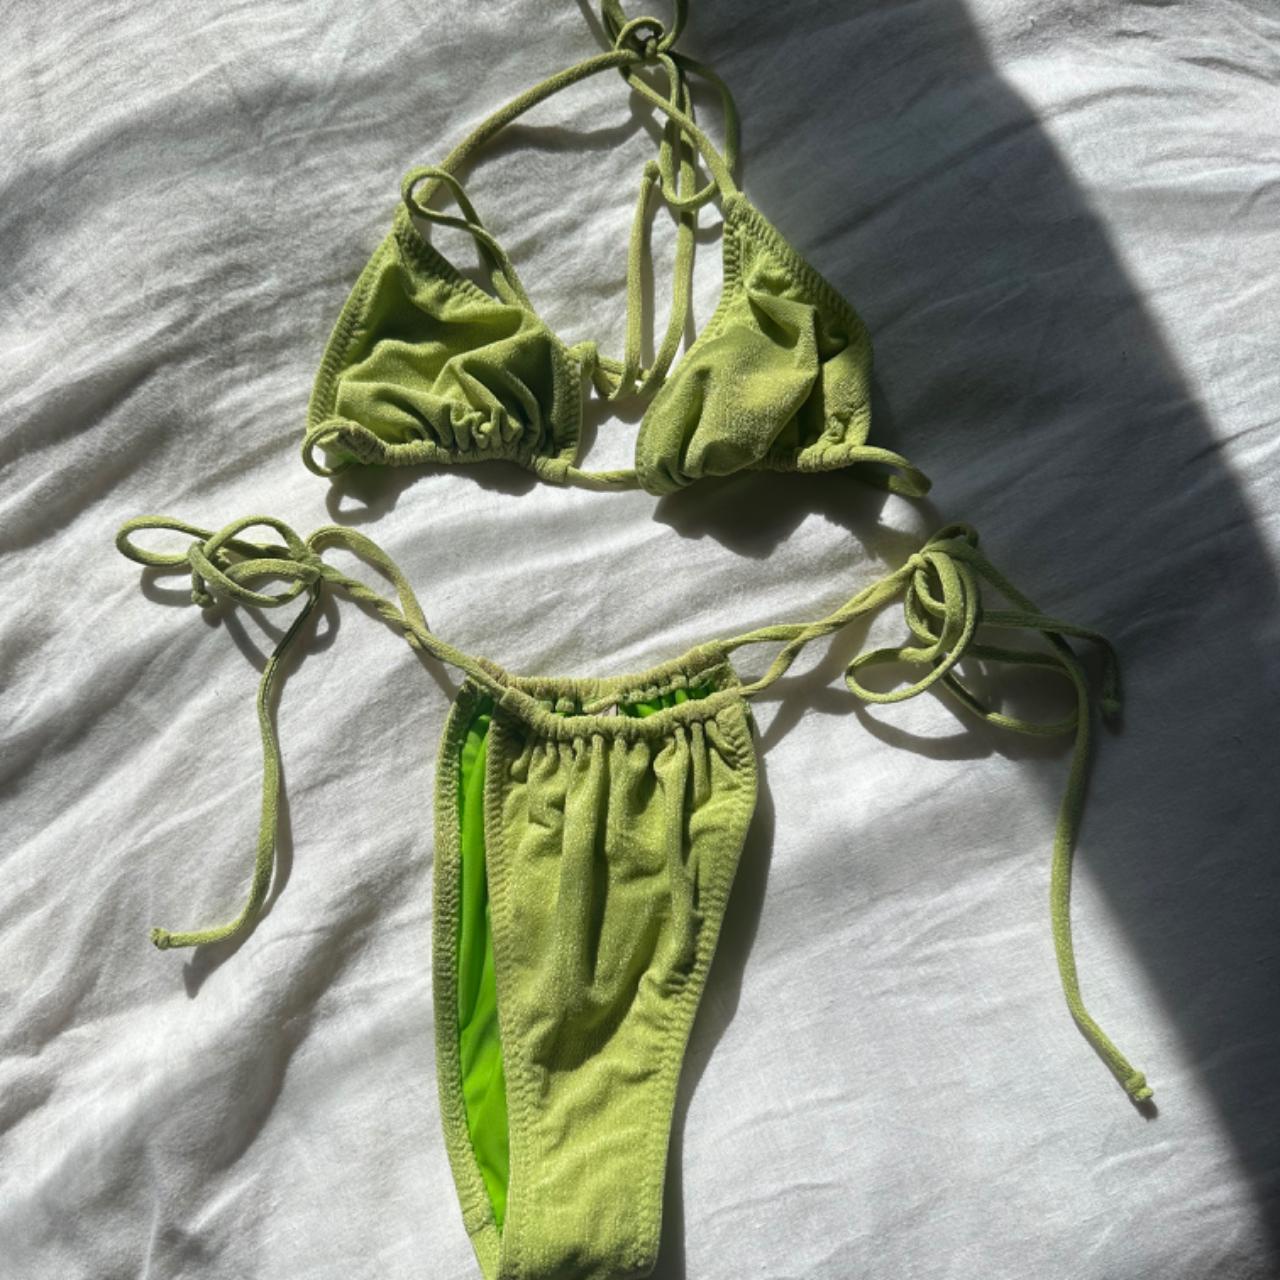 Bec and Bridge green bikini - size 8 - never worn - Depop